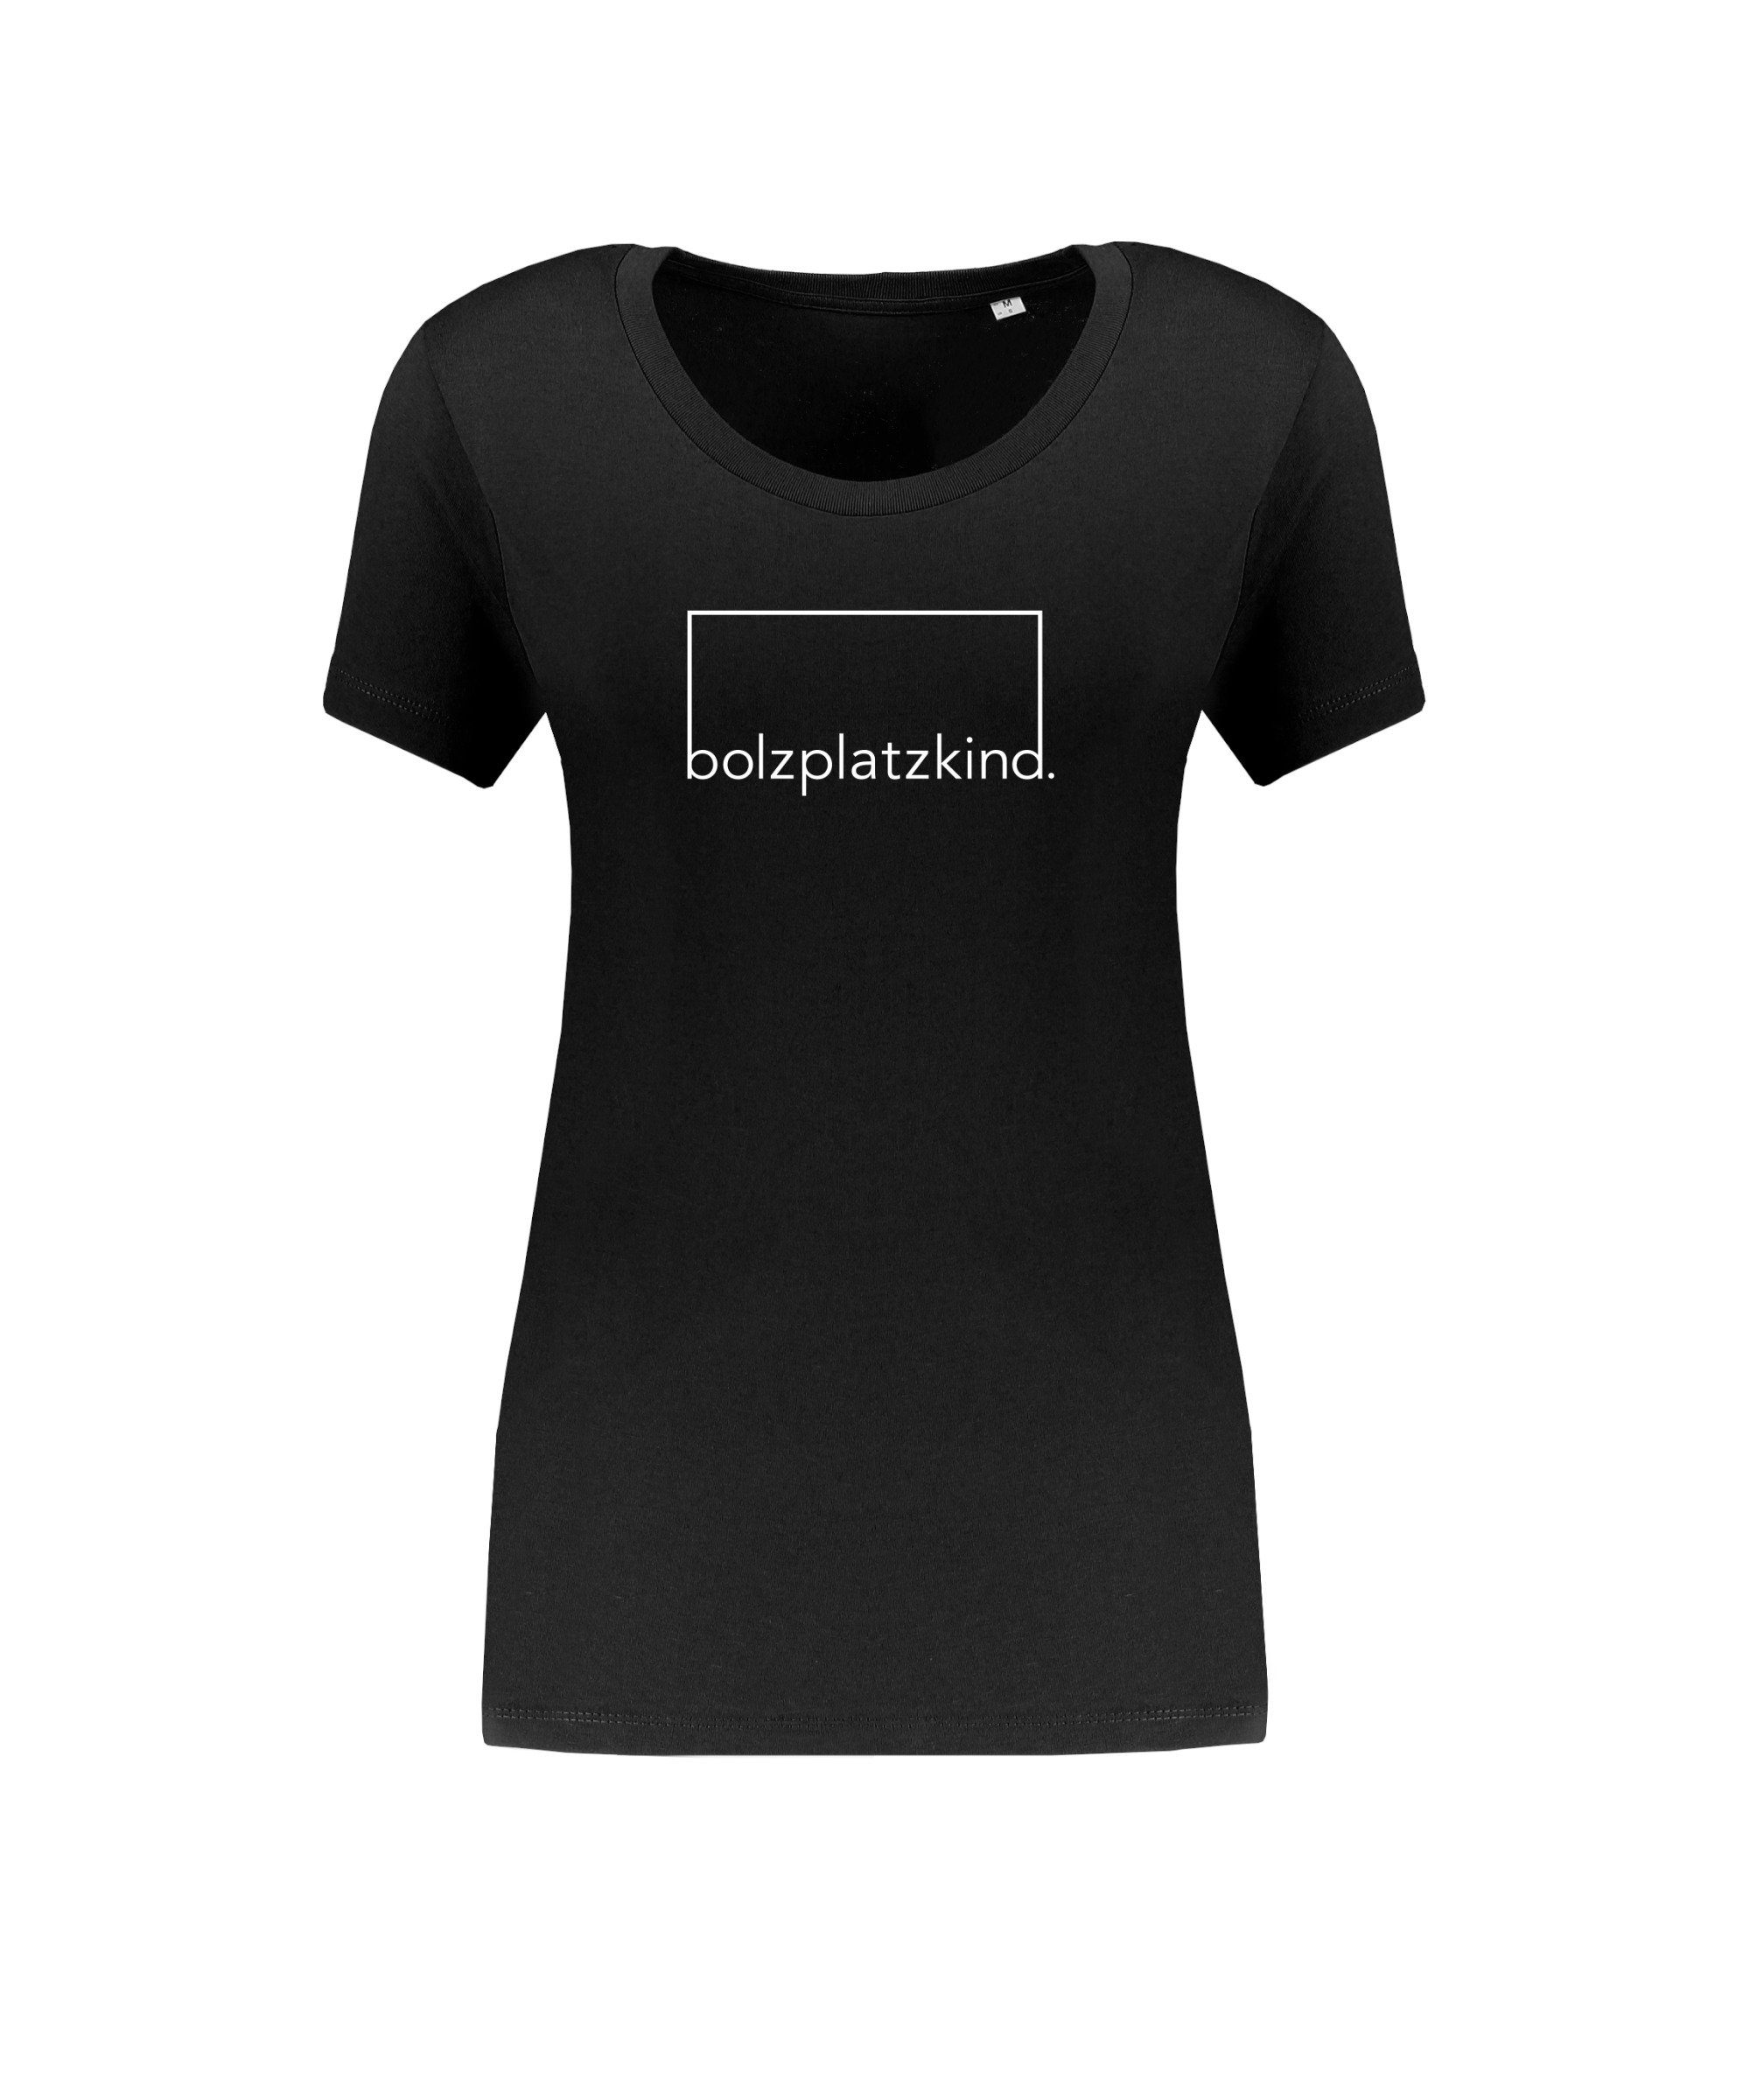 T-Shirt Damen "Geduld" schwarzweiss Bolzplatzkind T-Shirt default